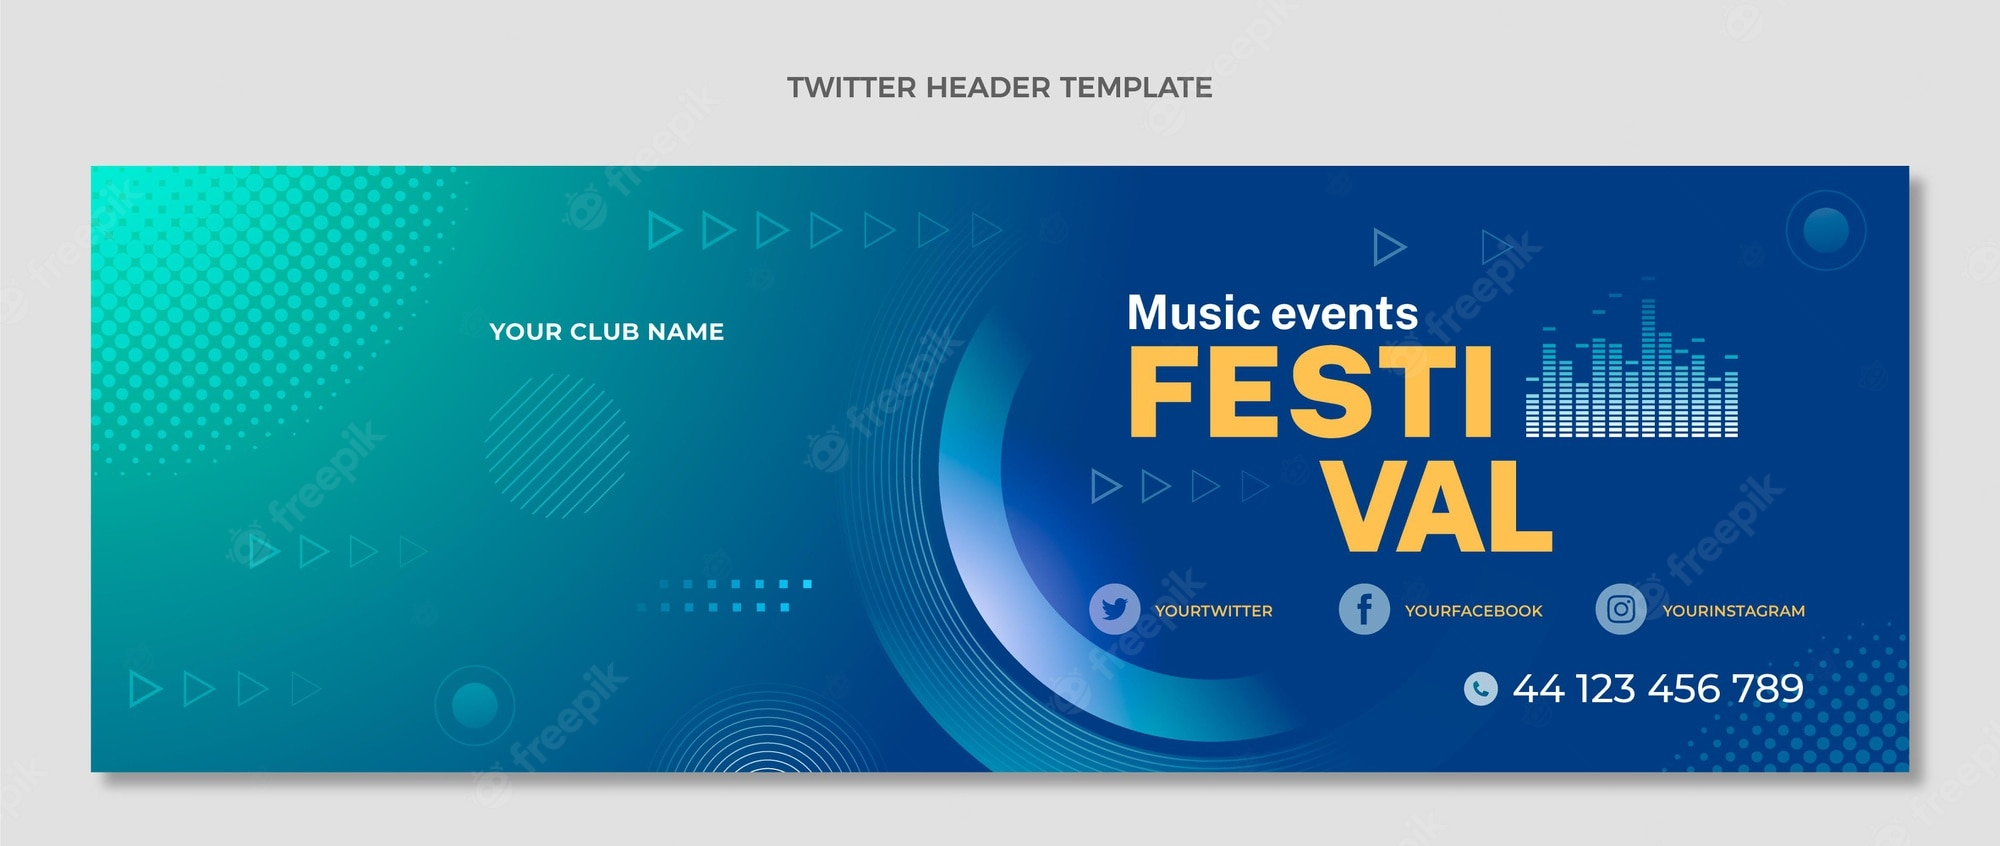 Twitter header Images  Free Vectors, Stock Photos & PSD Regarding Twitter Banner Template Psd